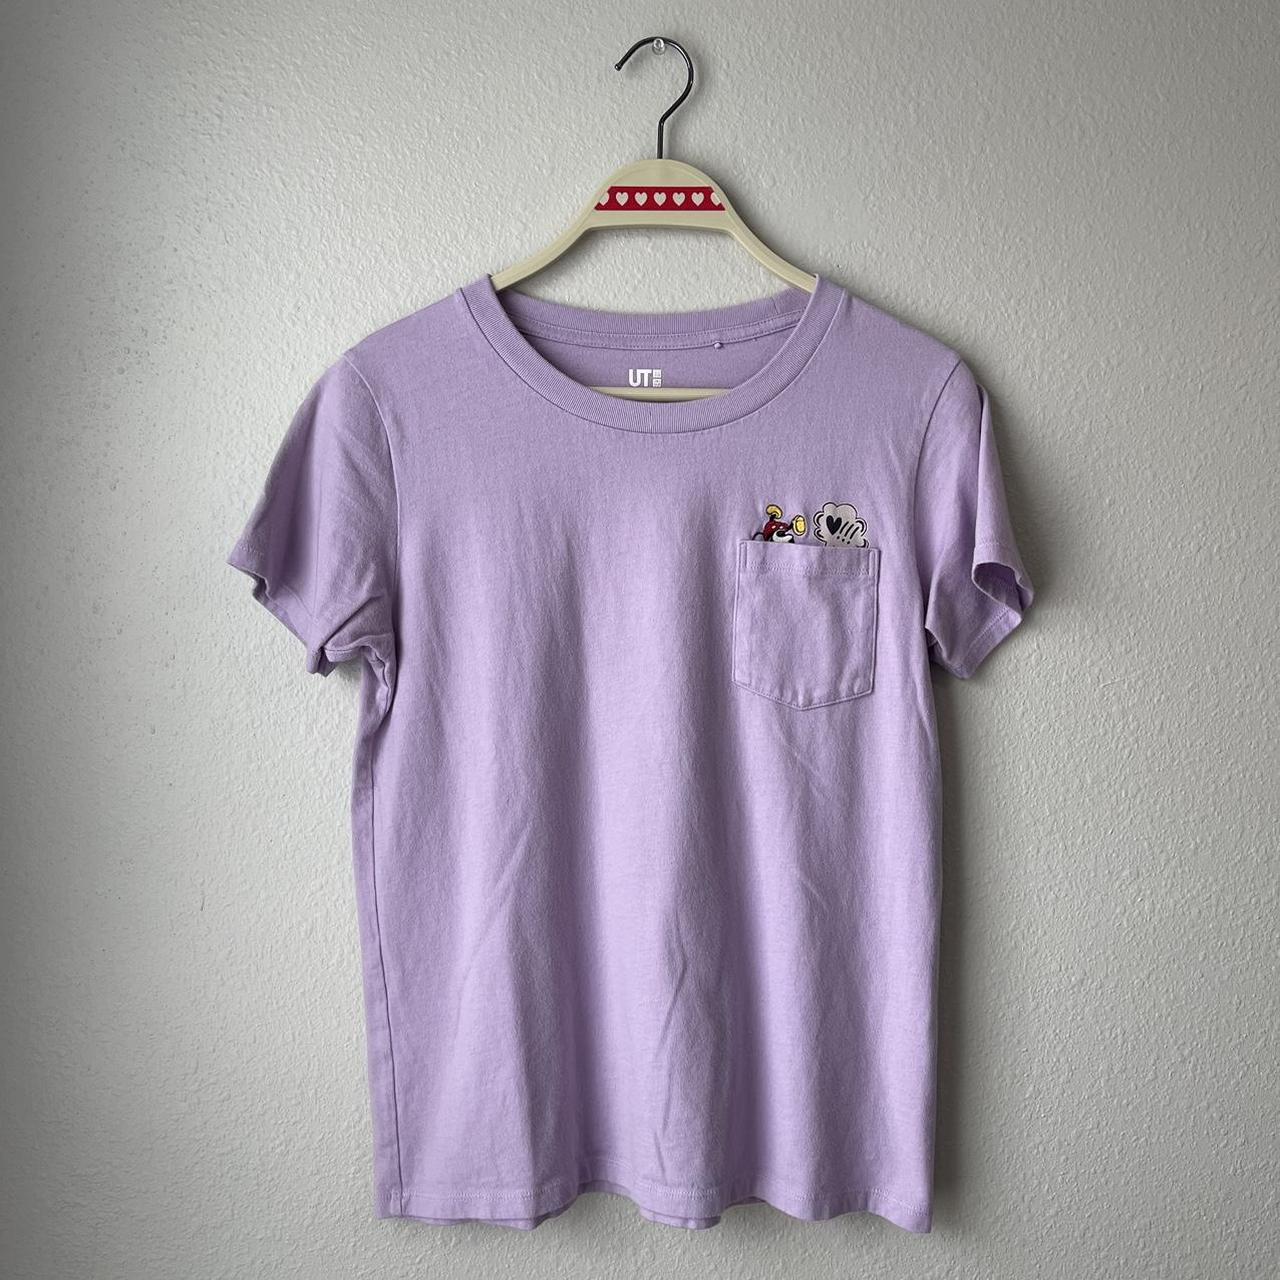 UNIQLO Women's Purple T-shirt | Depop